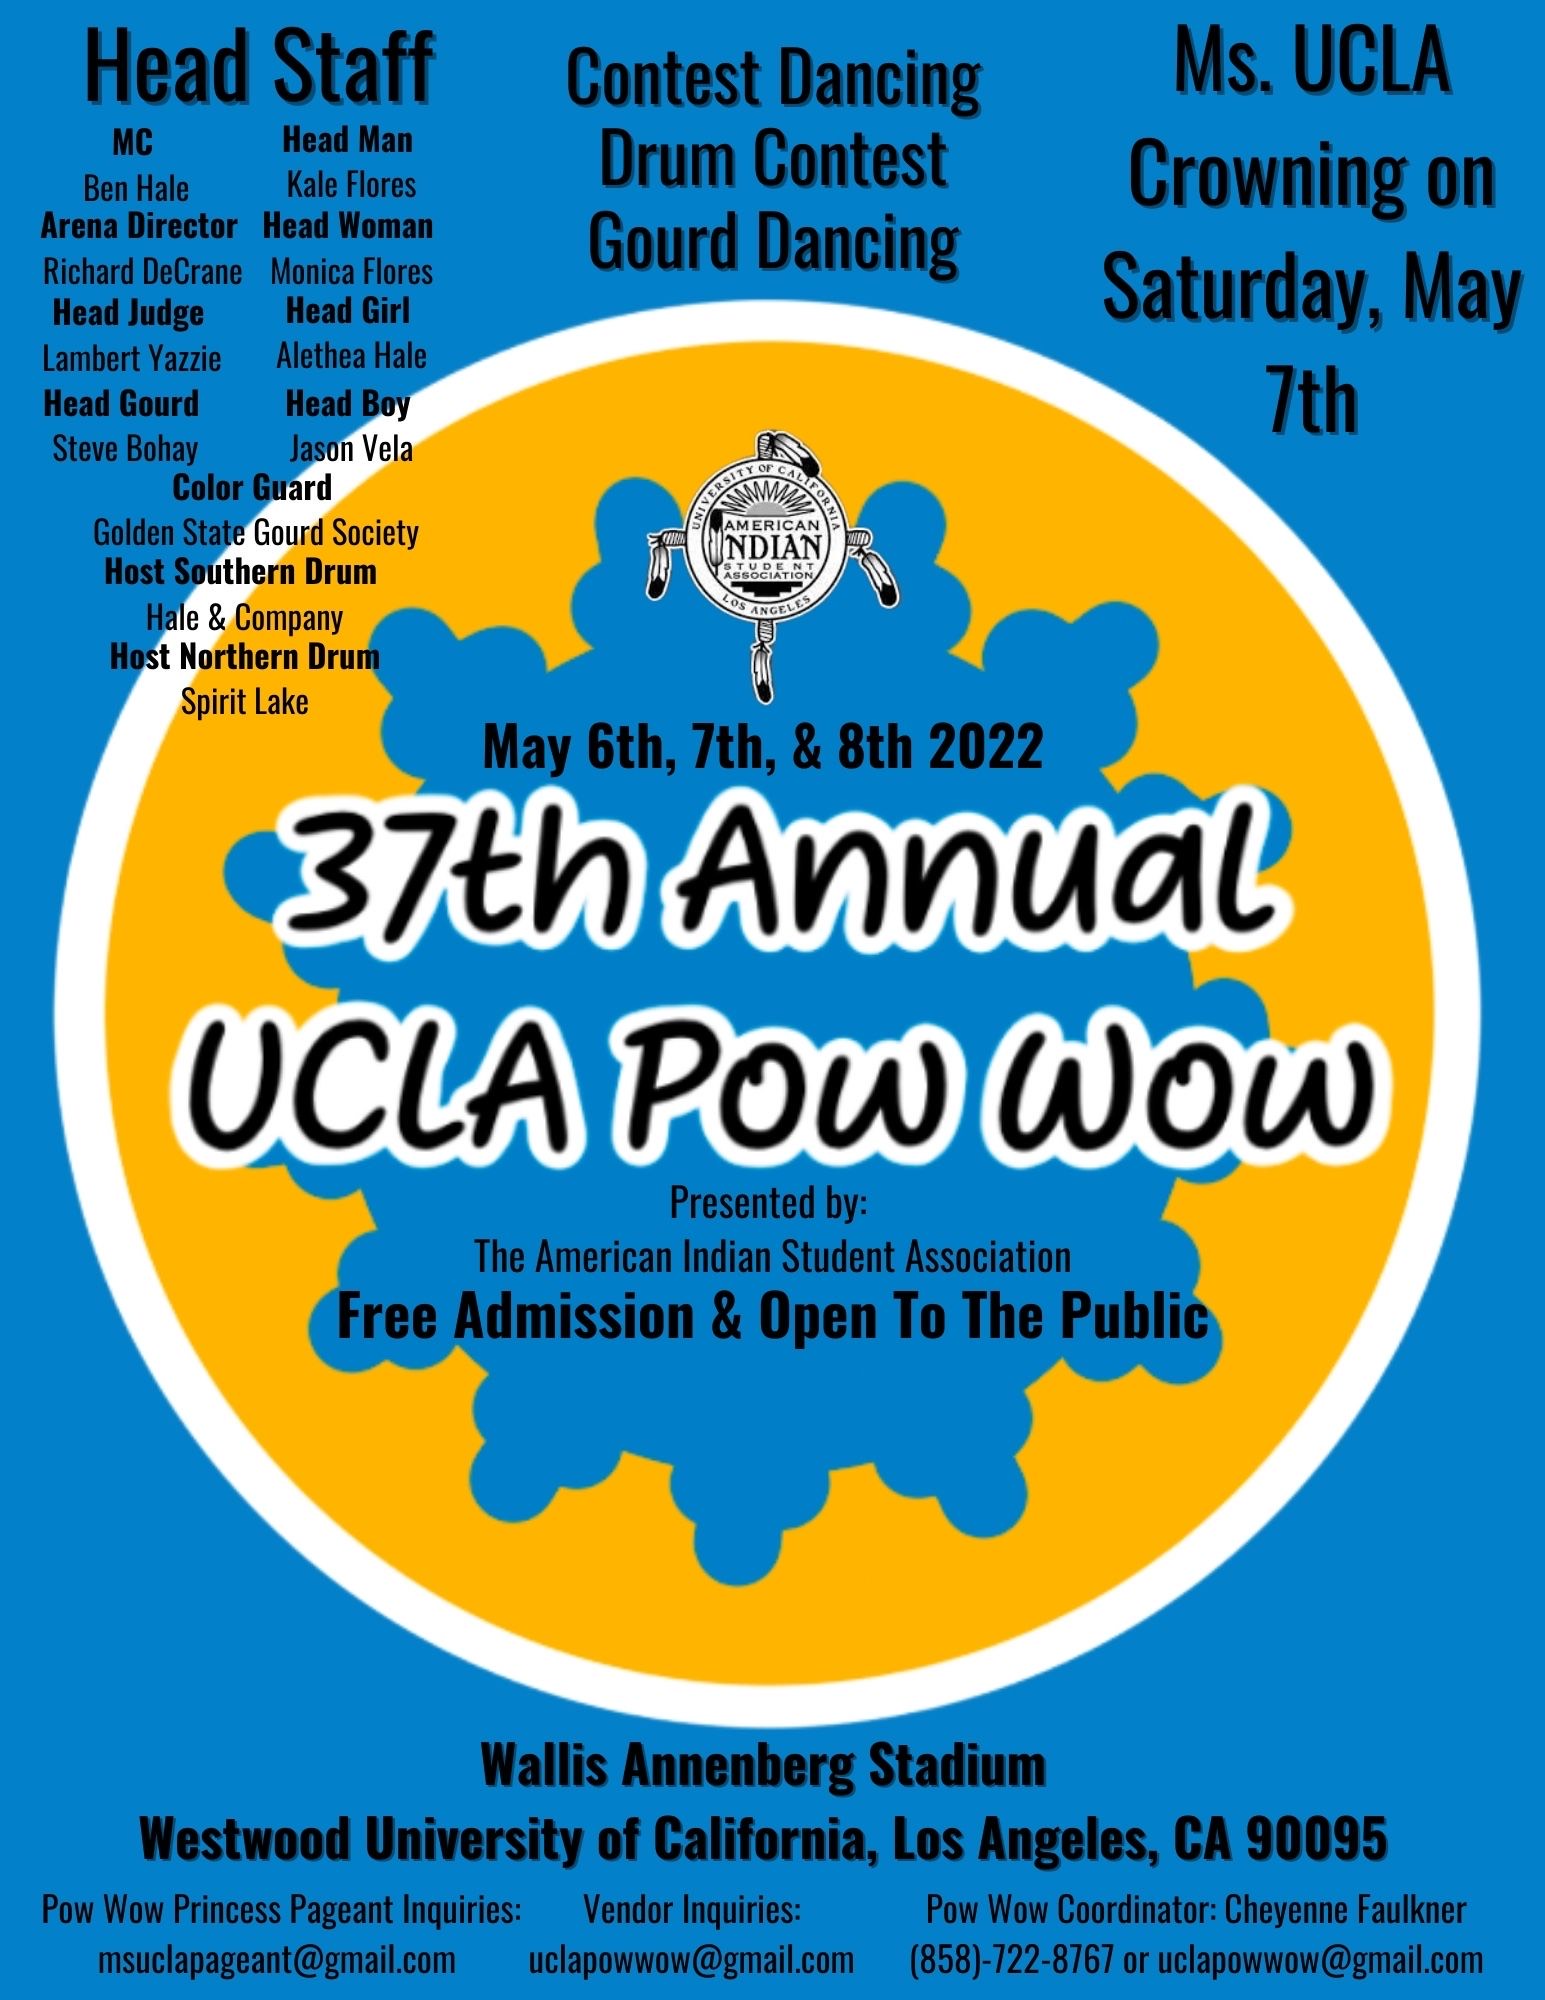 UCLA Pow-Wow